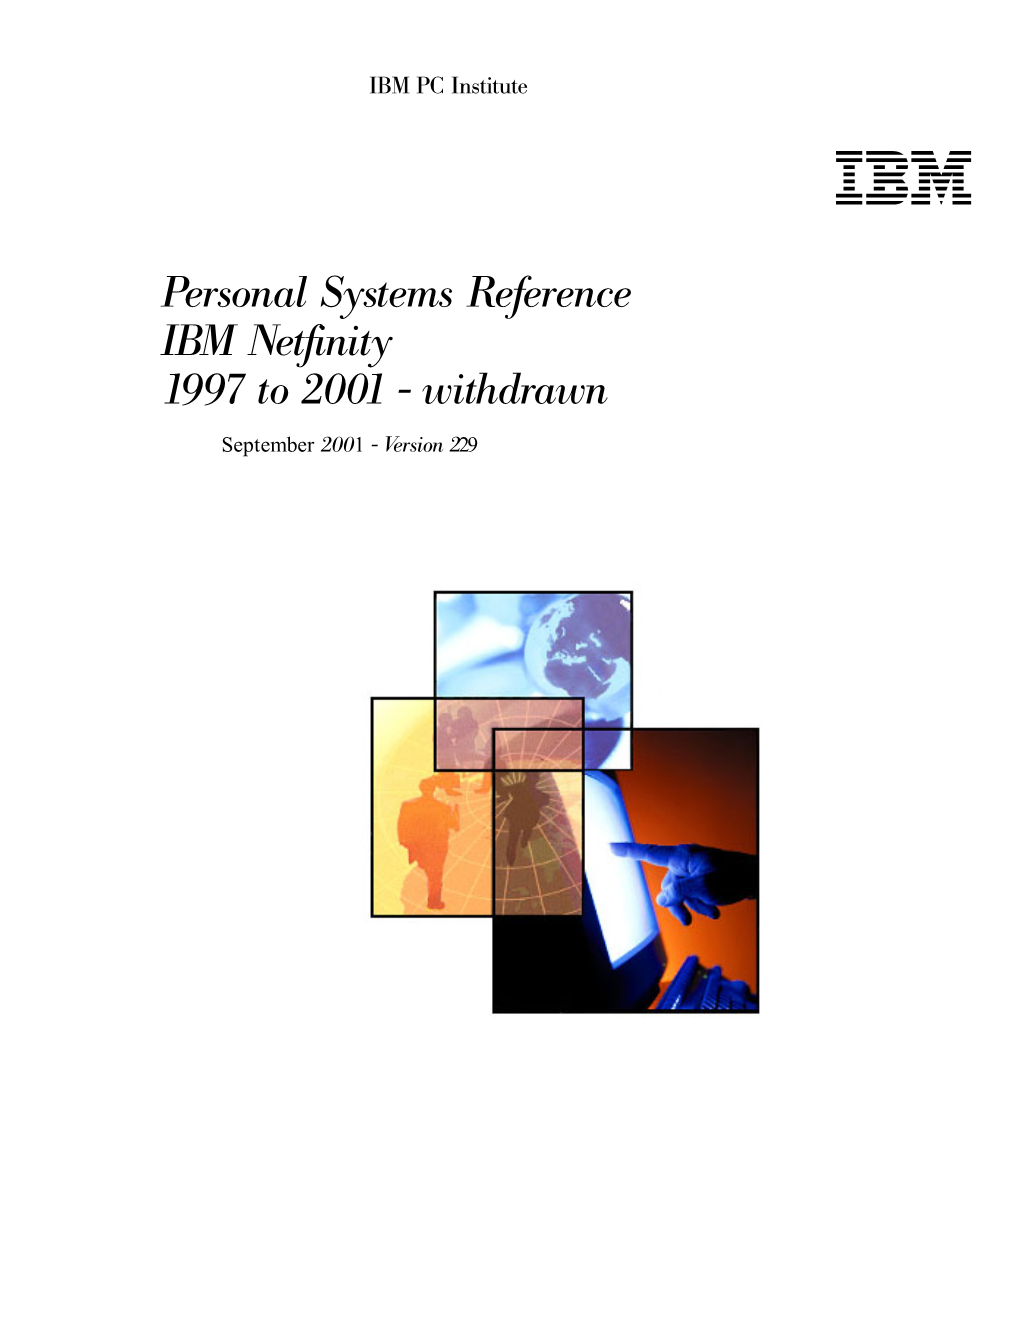 IBM Netfinity and PC Servers